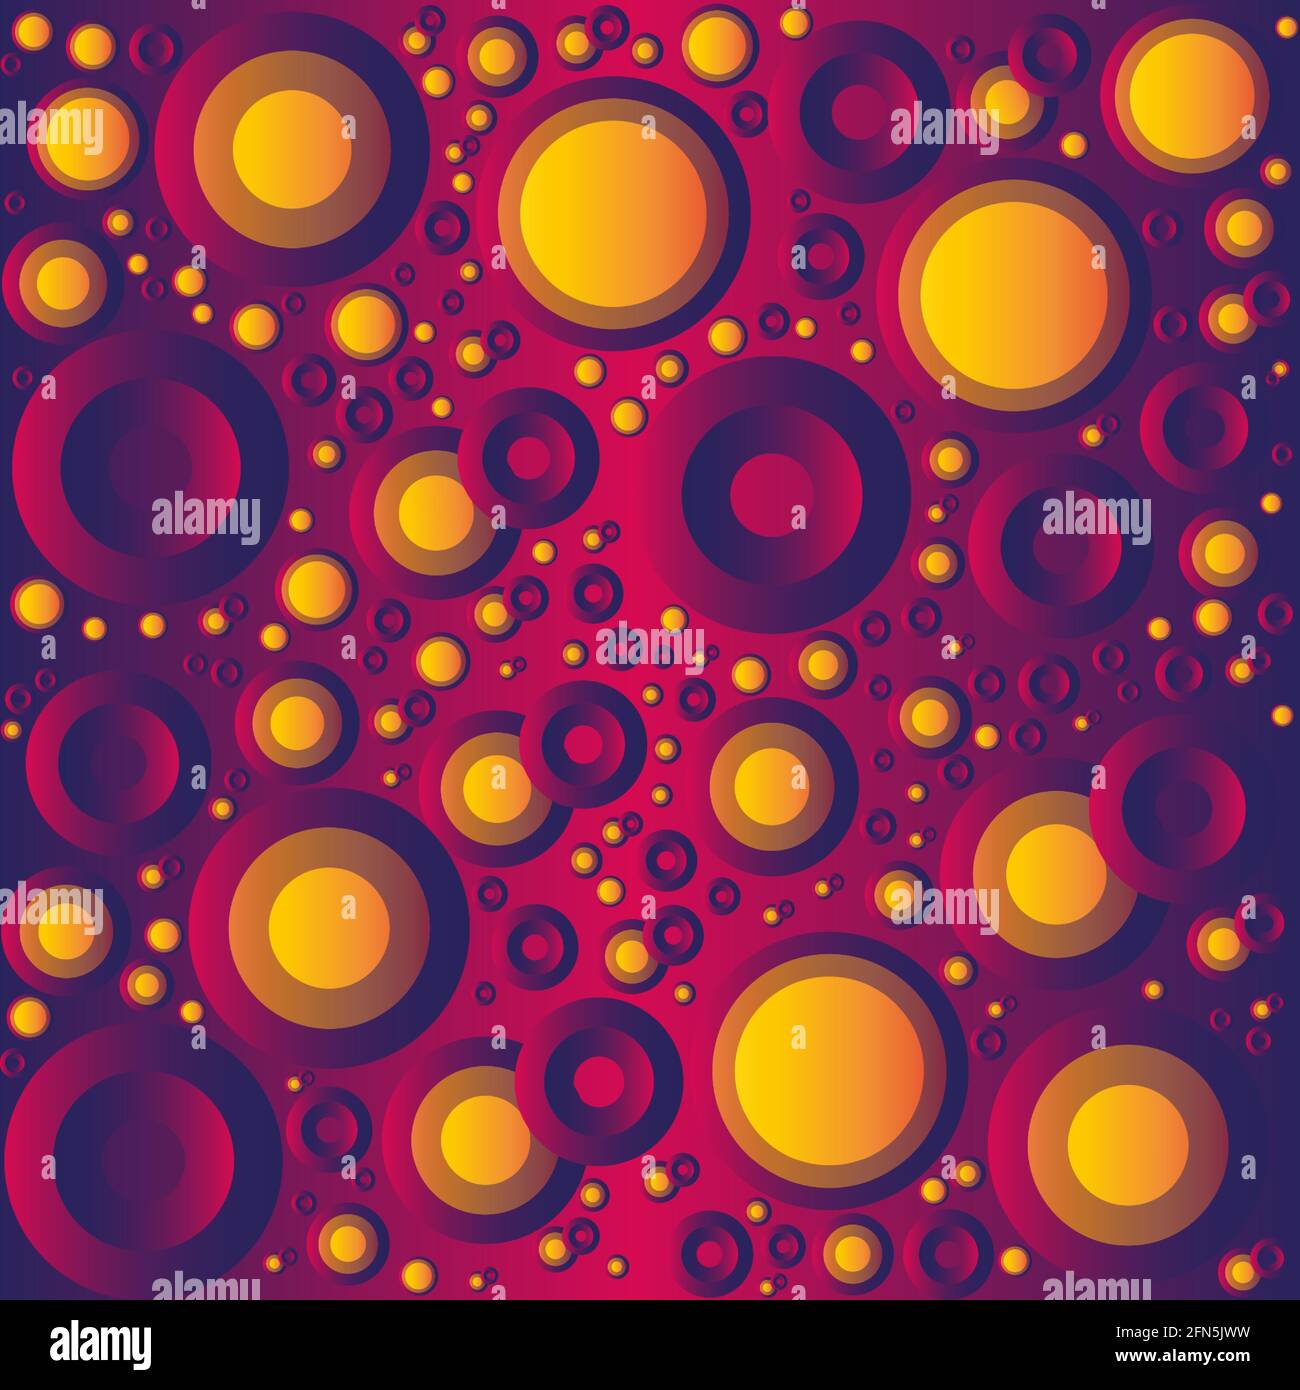 Nahtlos wiederholtes Muster. Knopfartige Kreise in verschiedenen Größen und Retro-Farben und Verläufen. Zusammenfassung. Stock Vektor